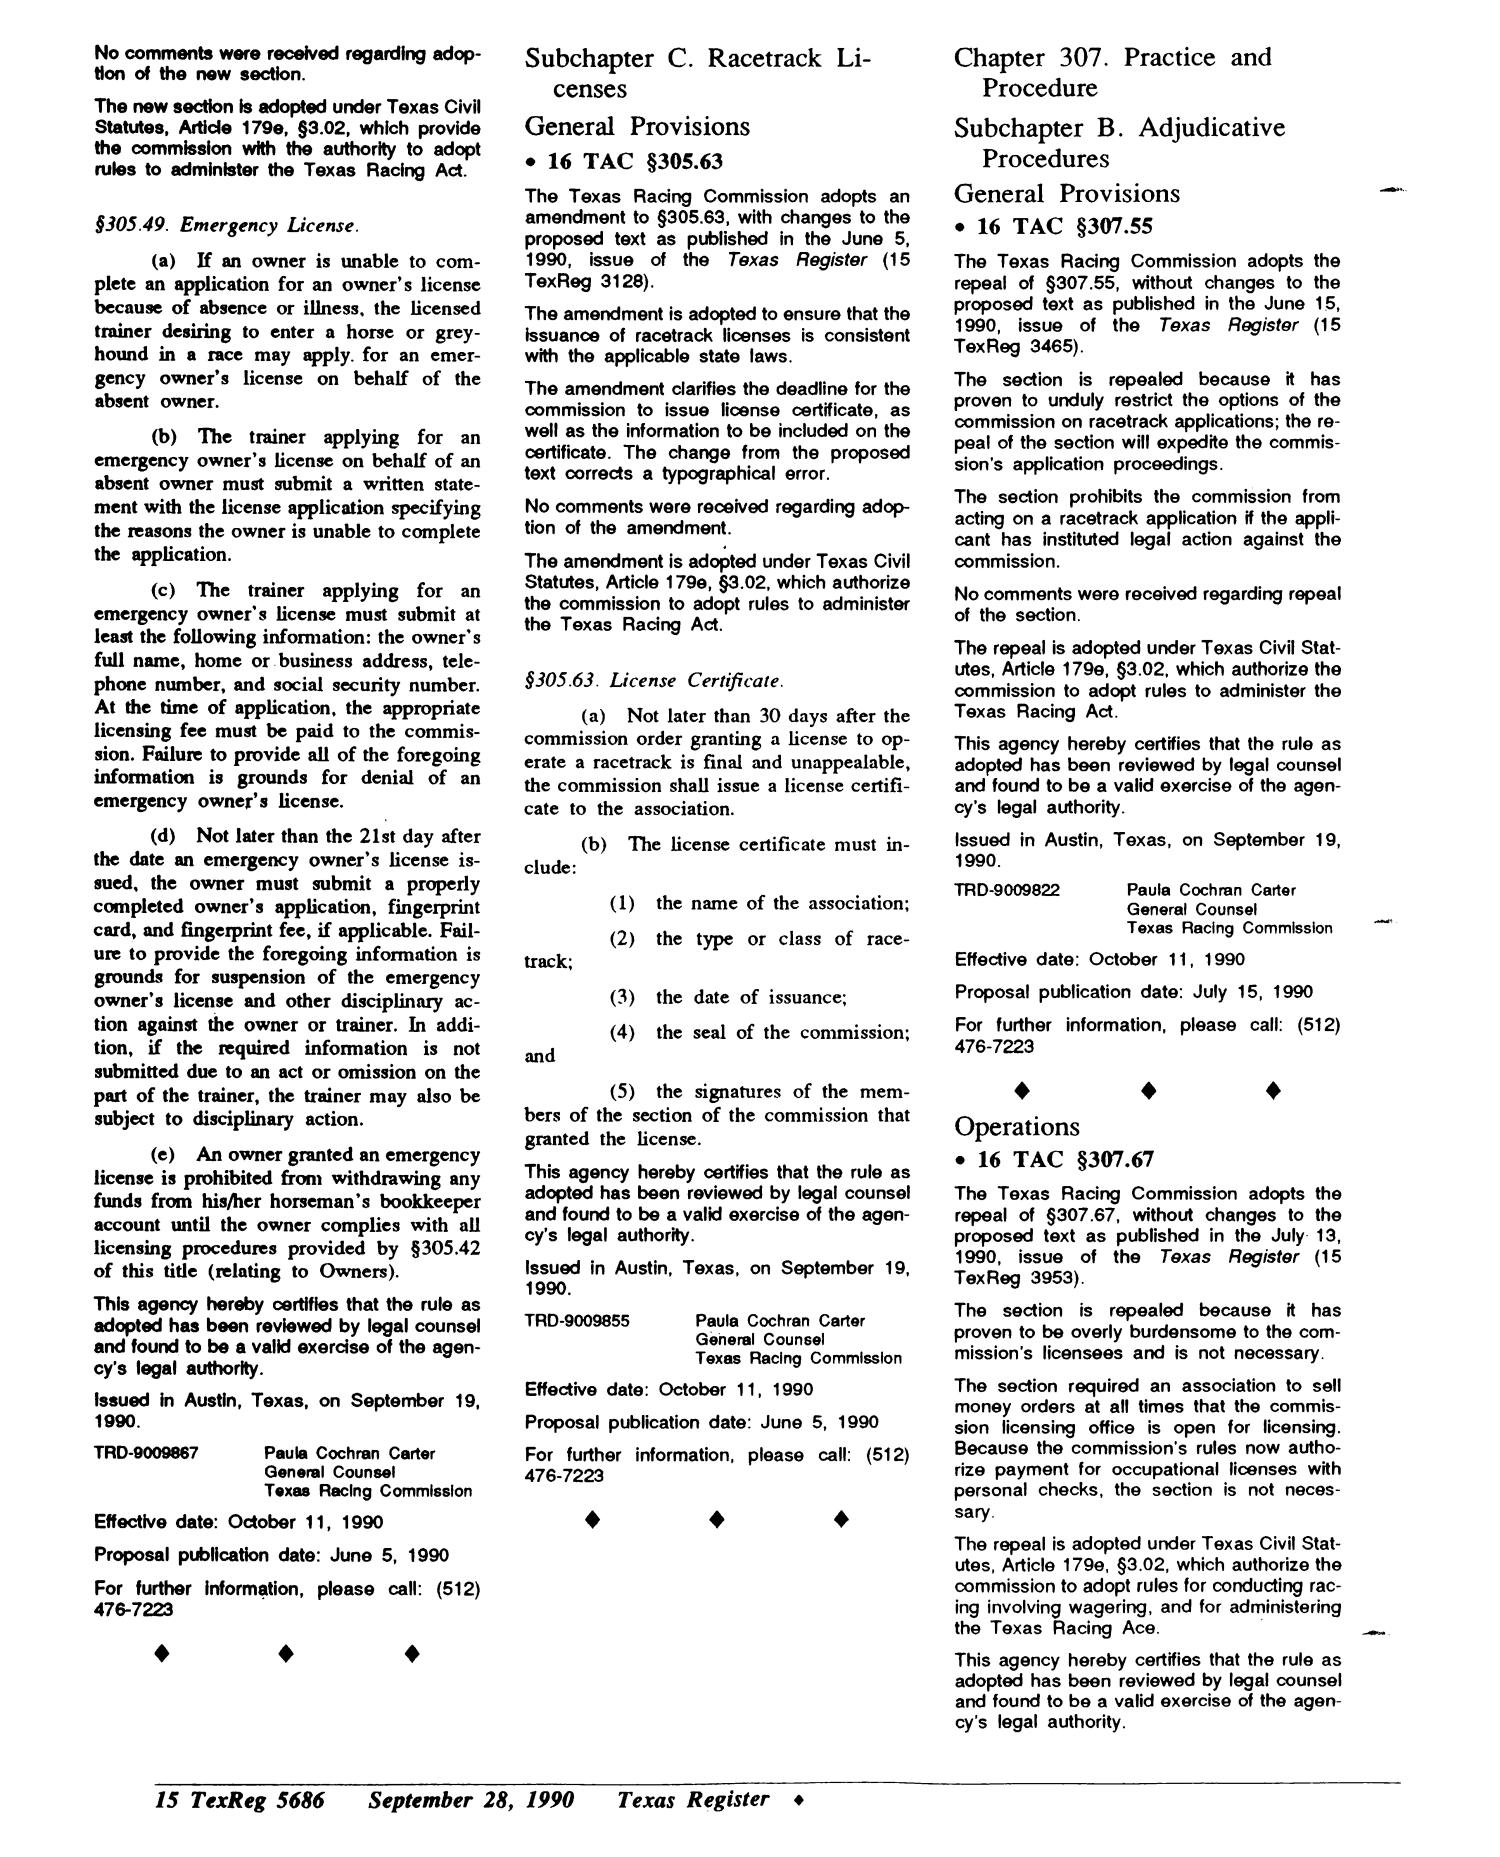 Texas Register, Volume 15, Number 74, Pages 5627-5768, September 28, 1990
                                                
                                                    5686
                                                